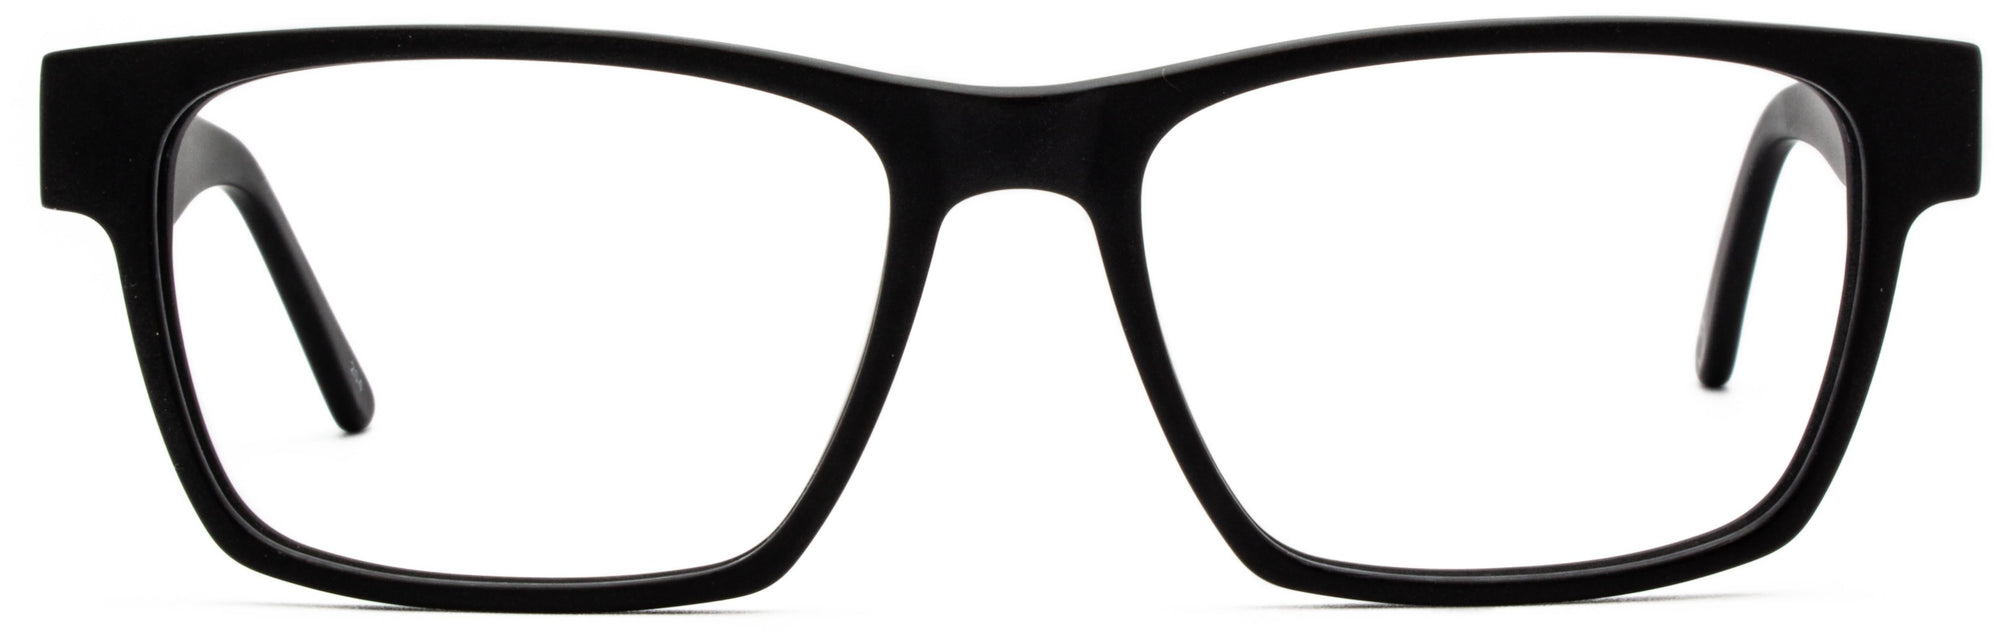 Alexander Daas - Remy Eyeglasses - Black - Front View